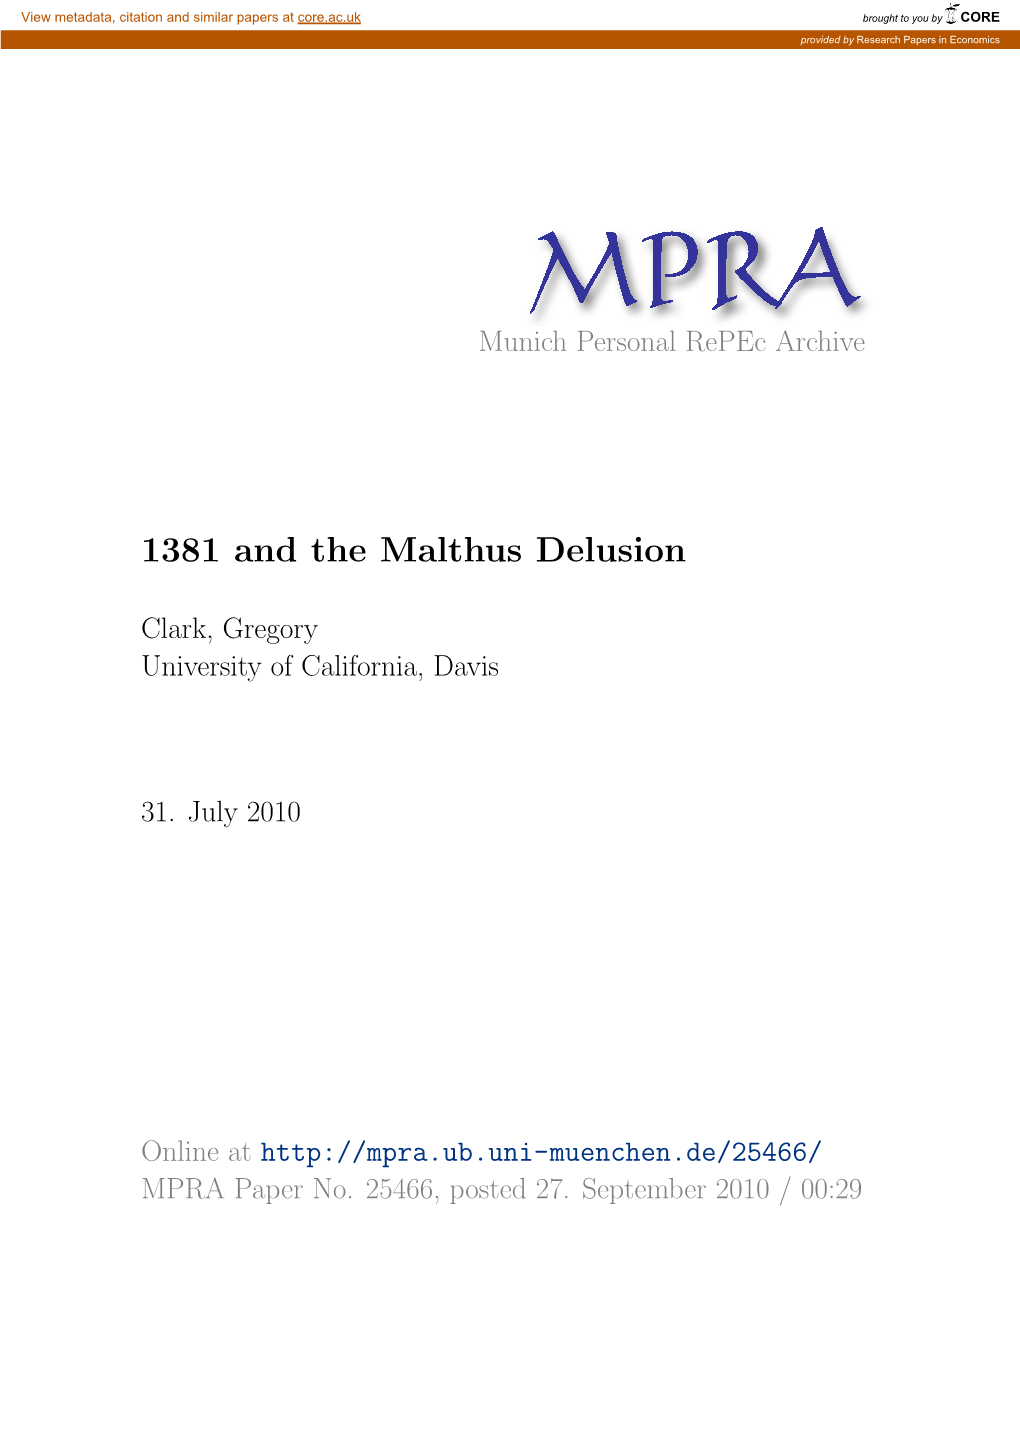 1381 and the Malthus Delusion